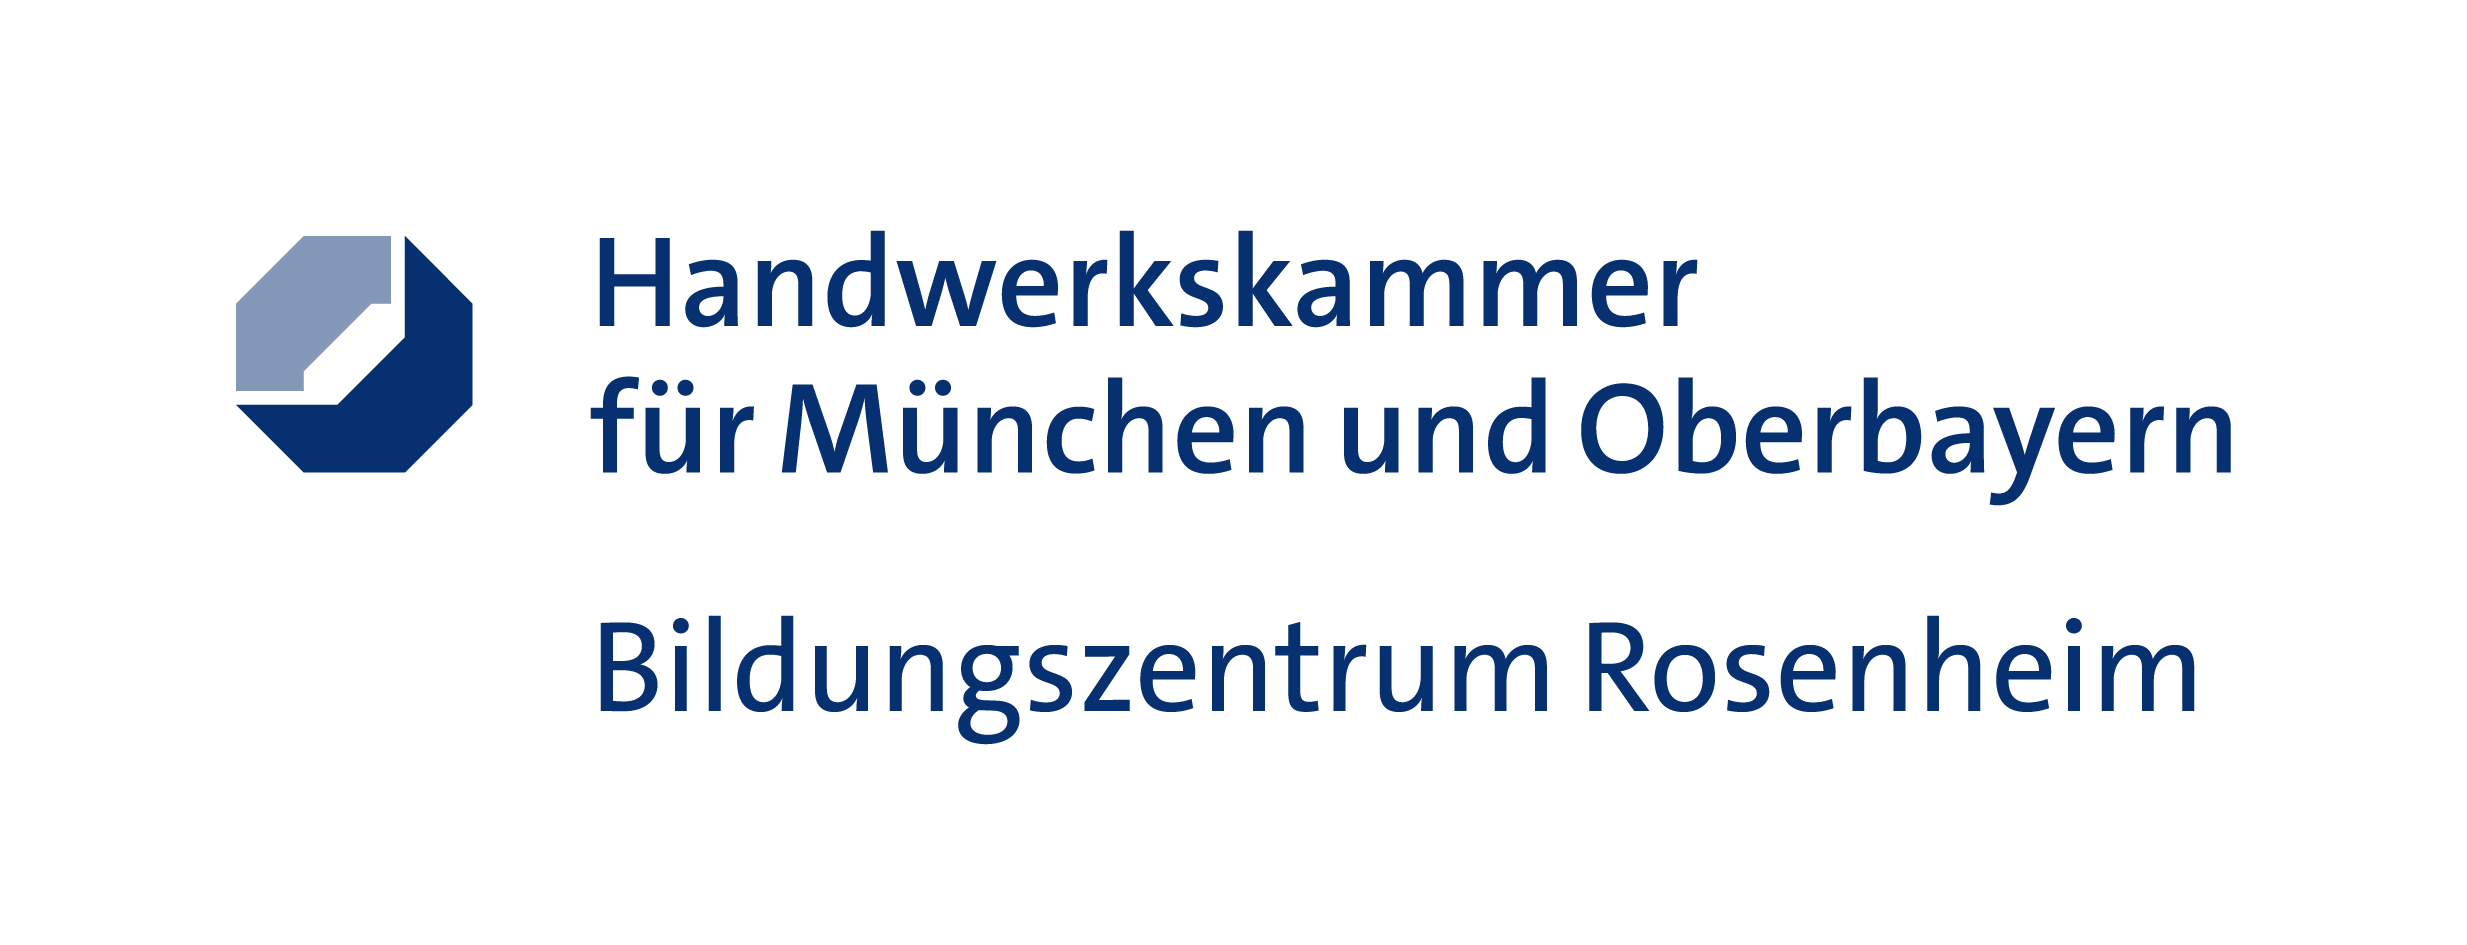 Bild 1 Handwerkskammer für München und Oberbayern in Rosenheim